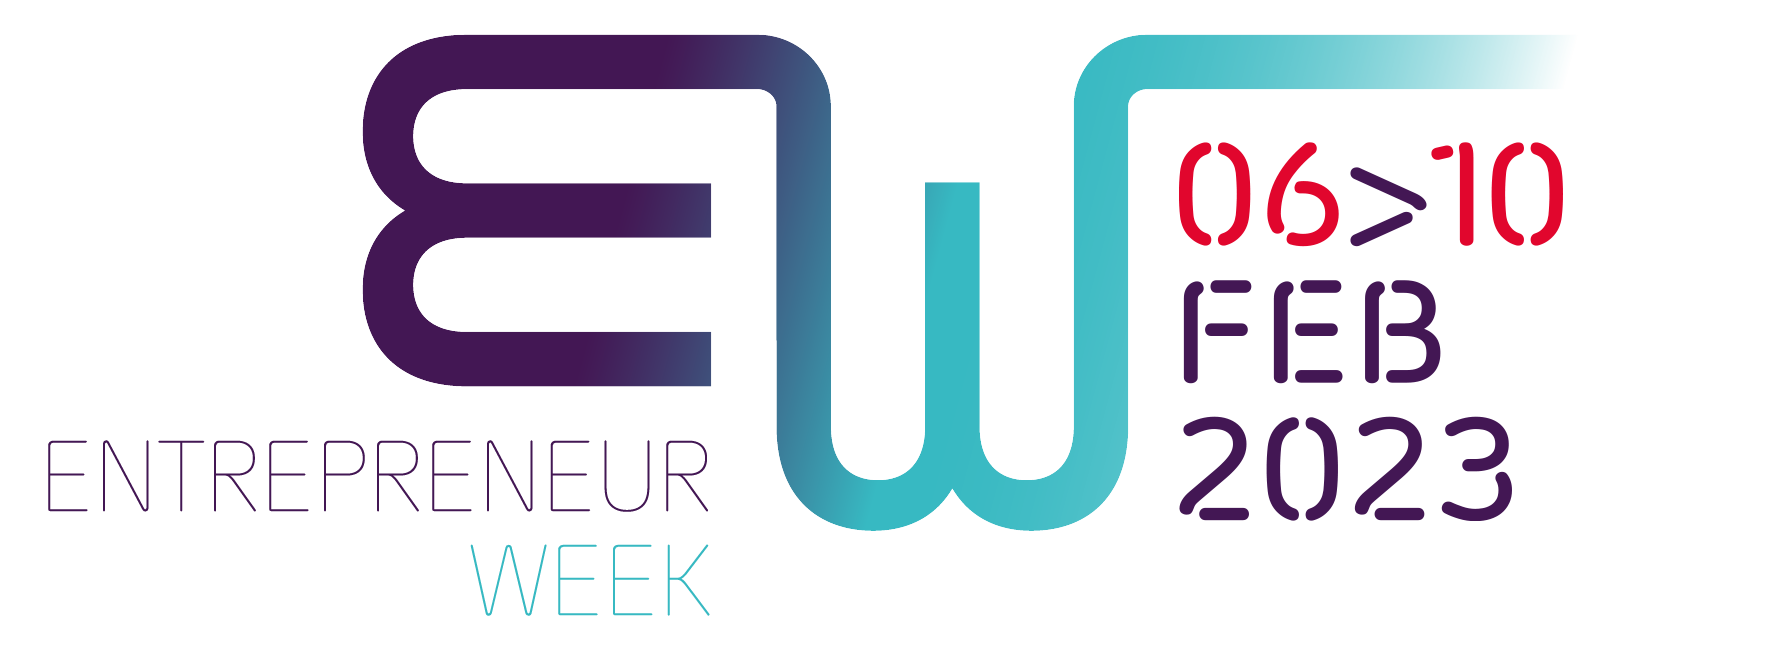 Entrepreneur-Week-2023